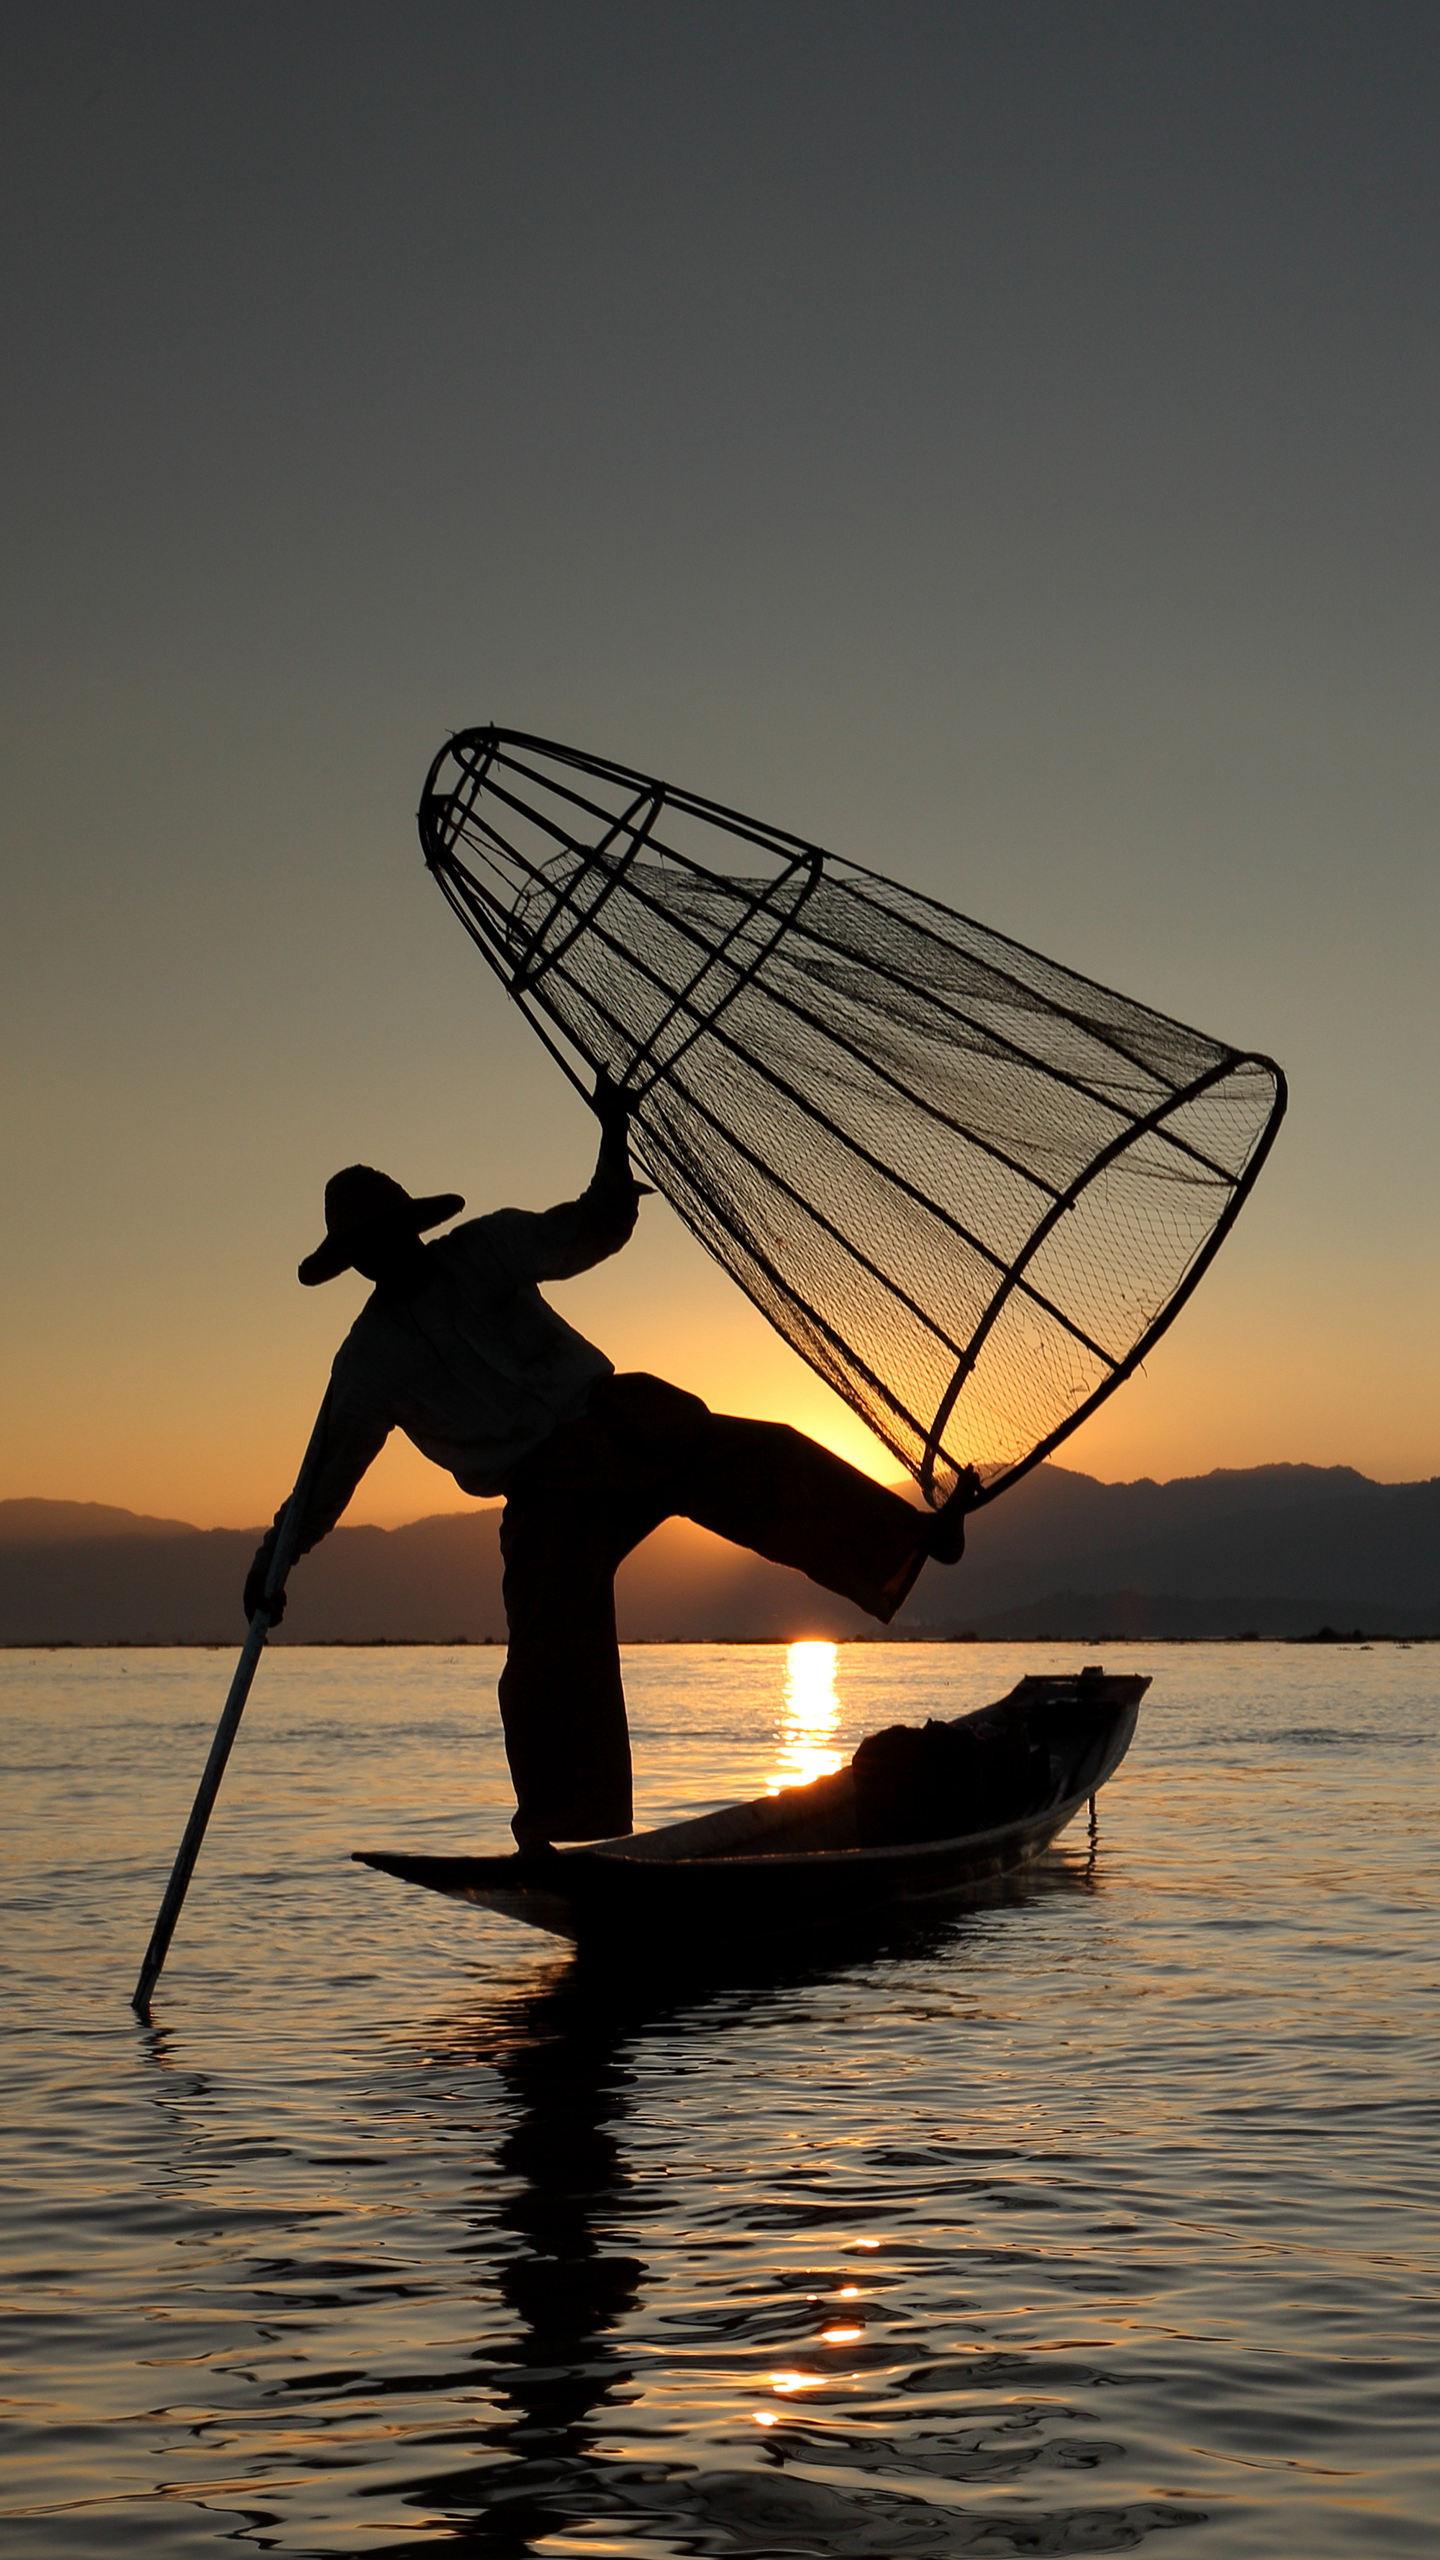 【缅甸——单脚打鱼人】单脚划船捕鱼是缅甸茵莱湖